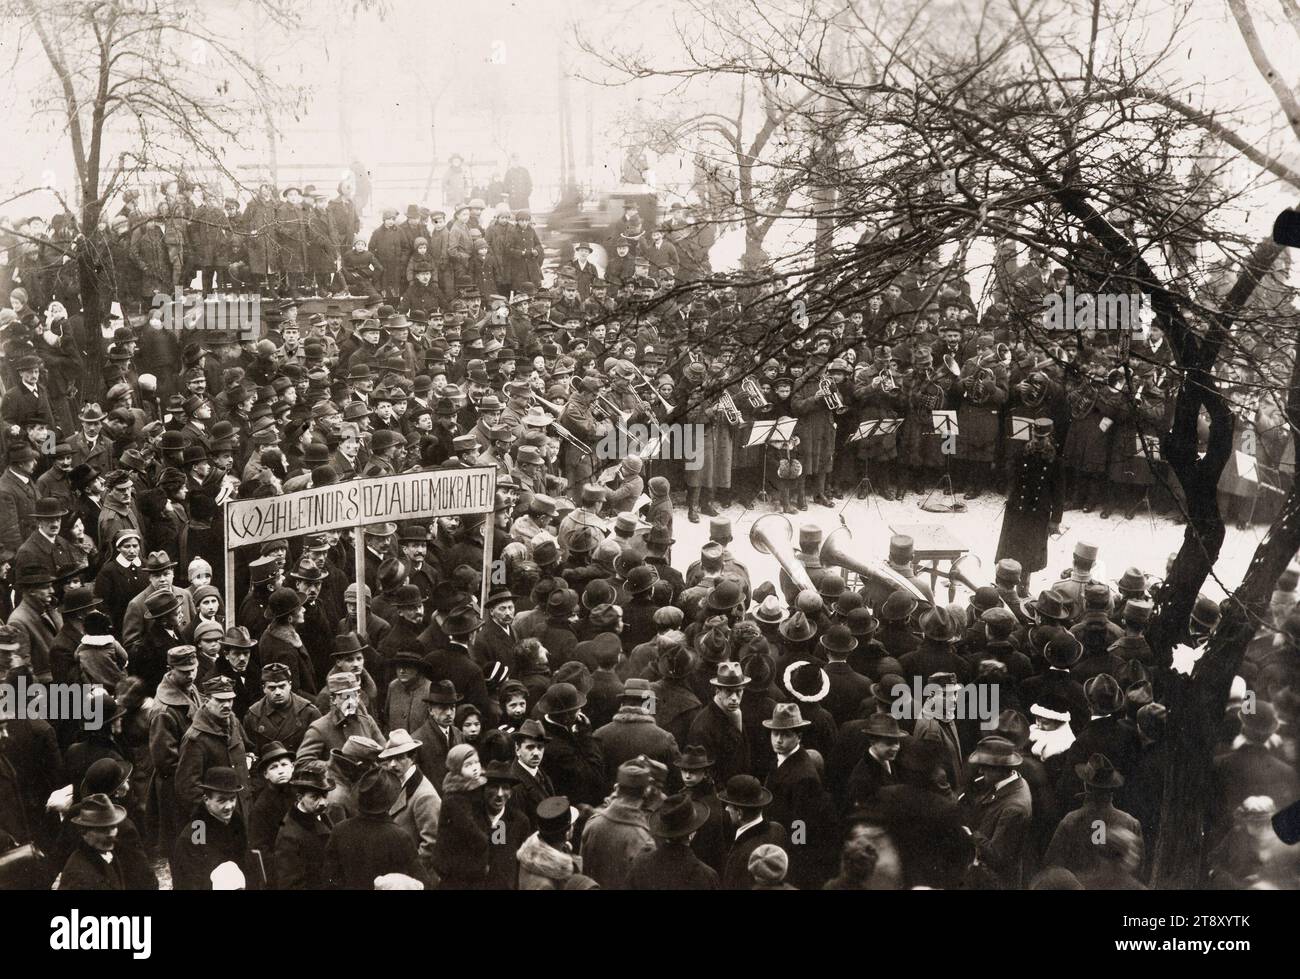 Agitazione elettorale moderna, Richard Hauffe (1878-1933), fotografo, 1919, fotografia, Assemblea politica, politica, riunione, assemblea, la collezione di Vienna Foto Stock